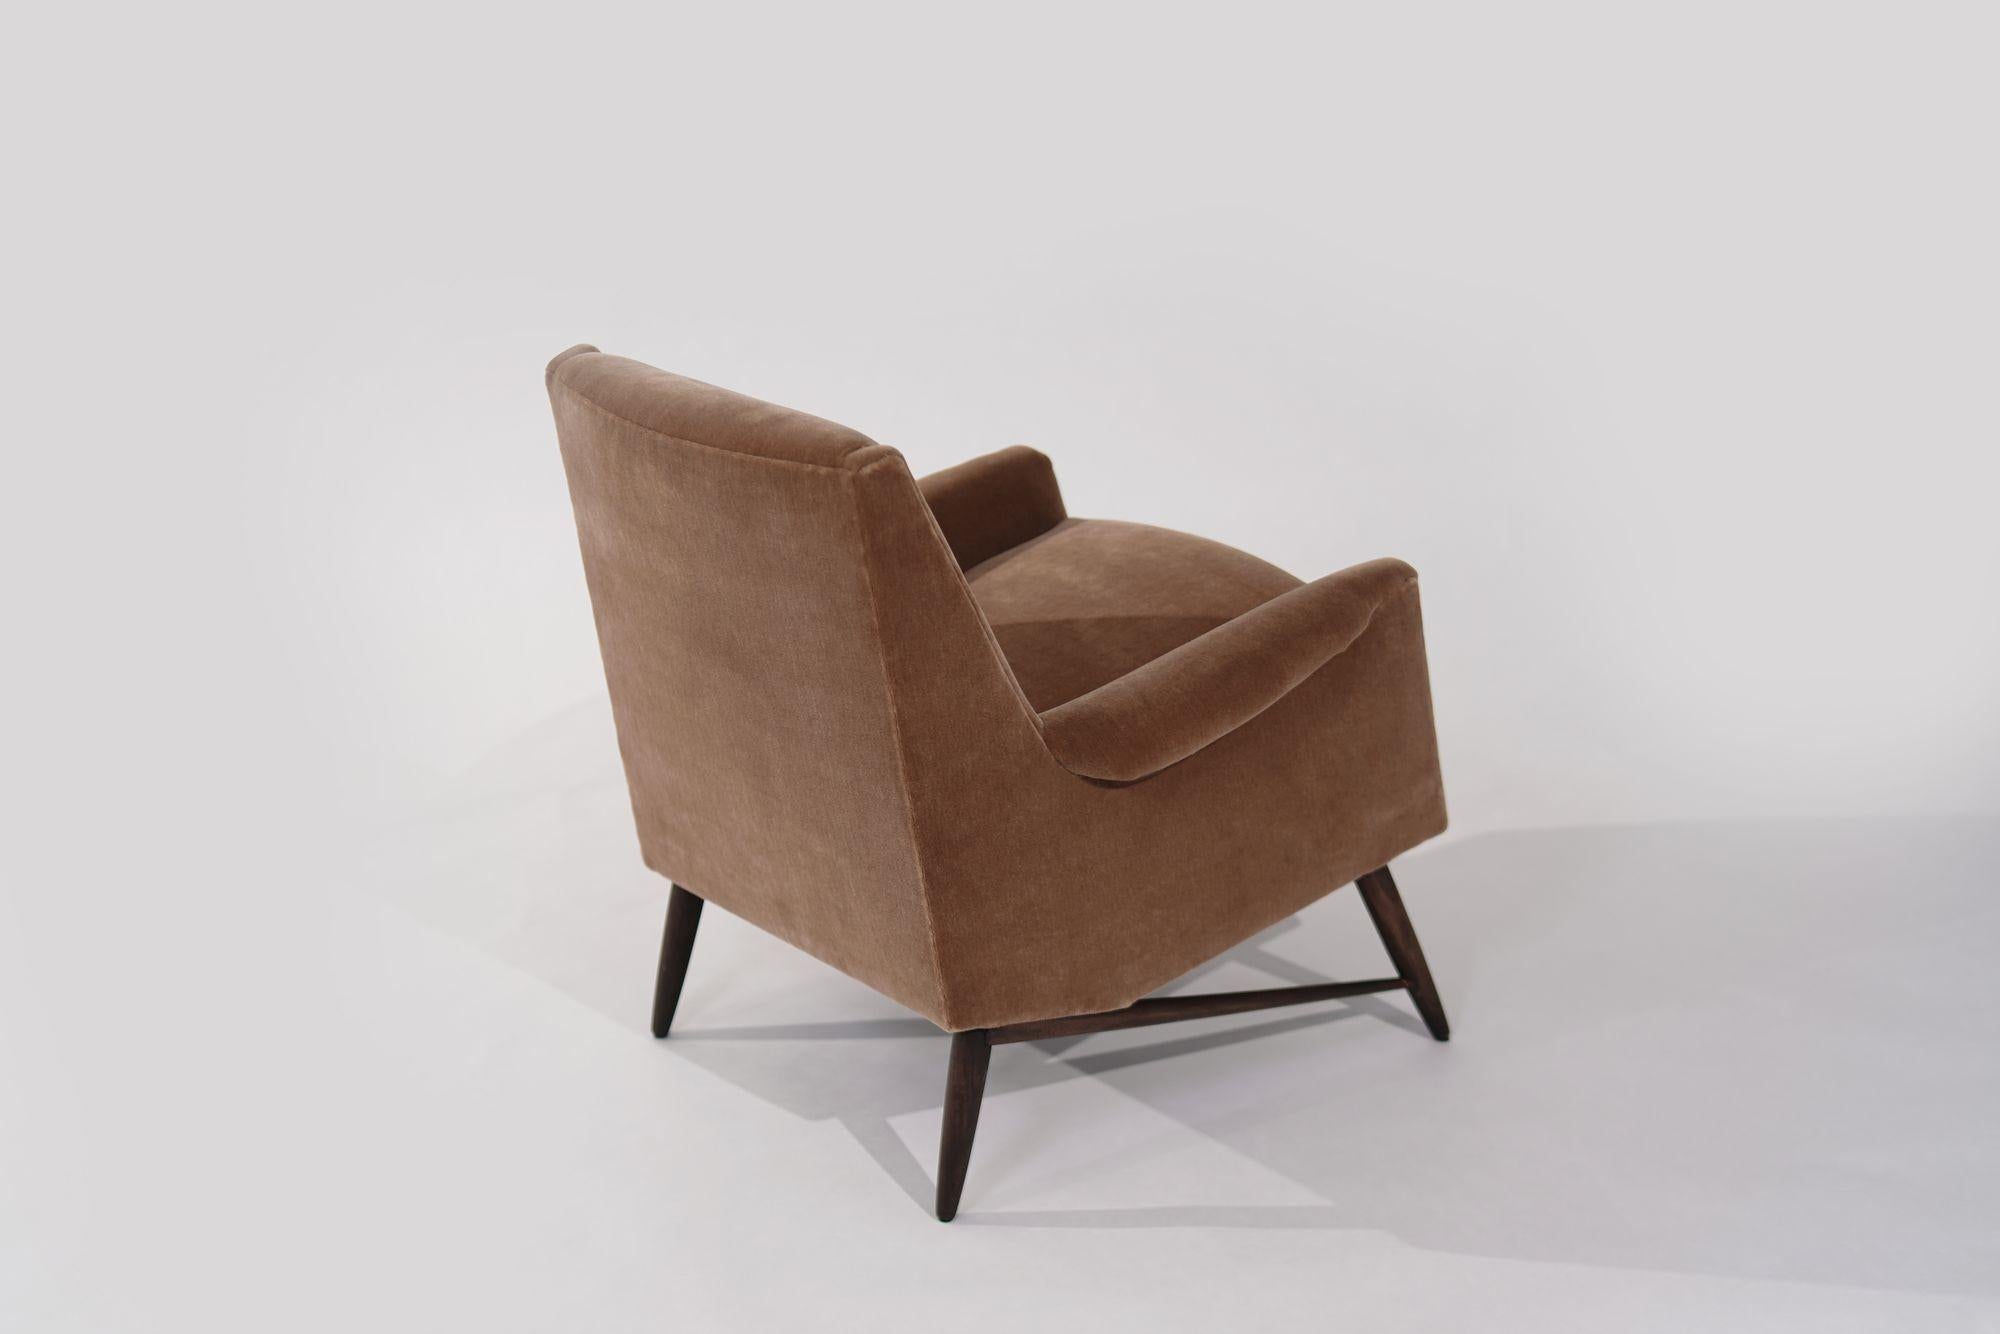 Entdecken Sie zeitlose Eleganz mit diesem skandinavisch-modernen Sessel aus den 1950er Jahren. Sorgfältig restauriert und mit luxuriösem goldenem Mohair bezogen, verkörpert er den Charme und die Raffinesse der Jahrhundertmitte. Ein Highlight für